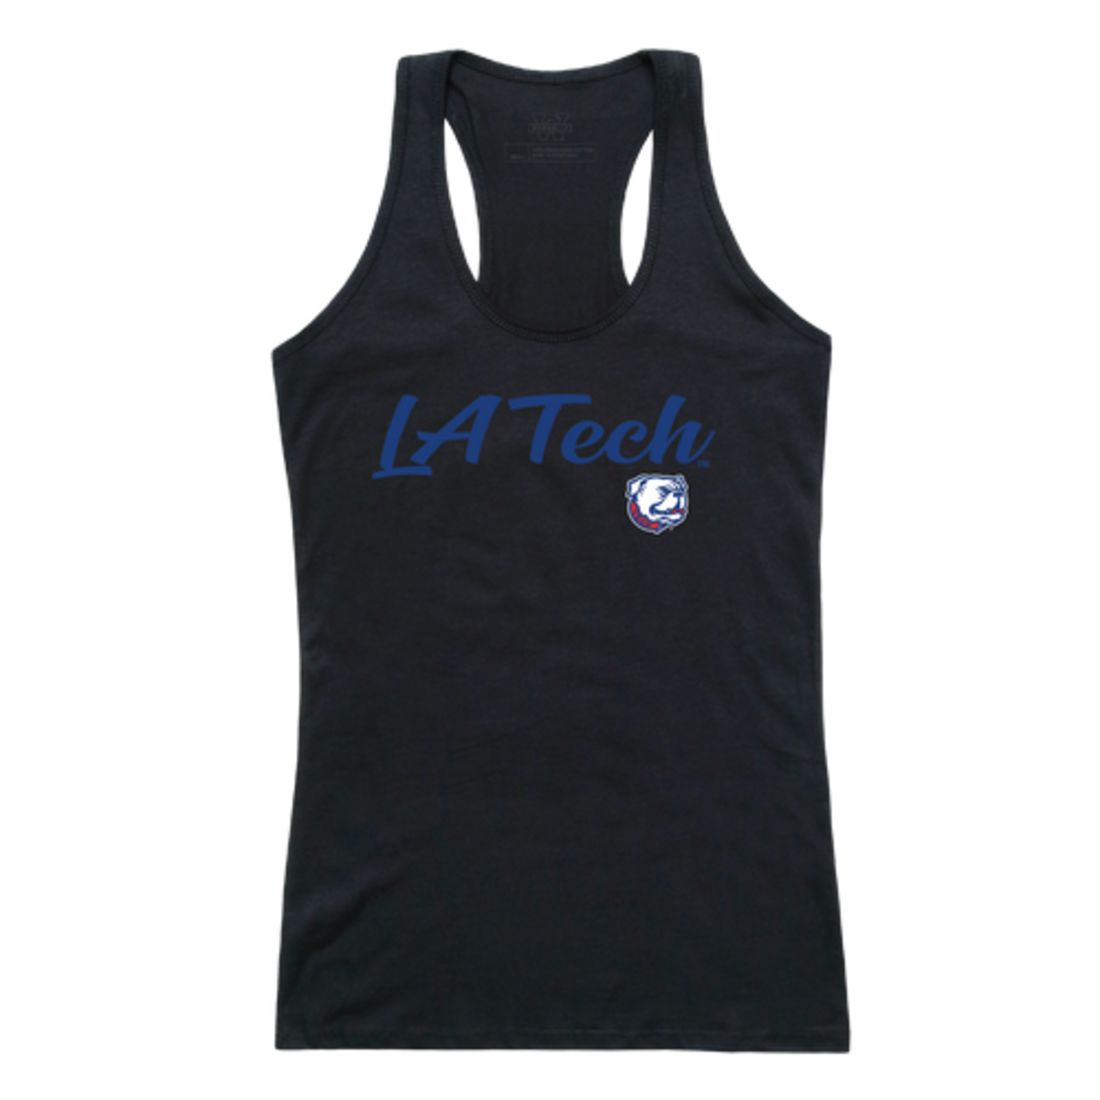 Louisiana Tech University Bulldogs Womens Script Tank Top T-Shirt-Campus-Wardrobe